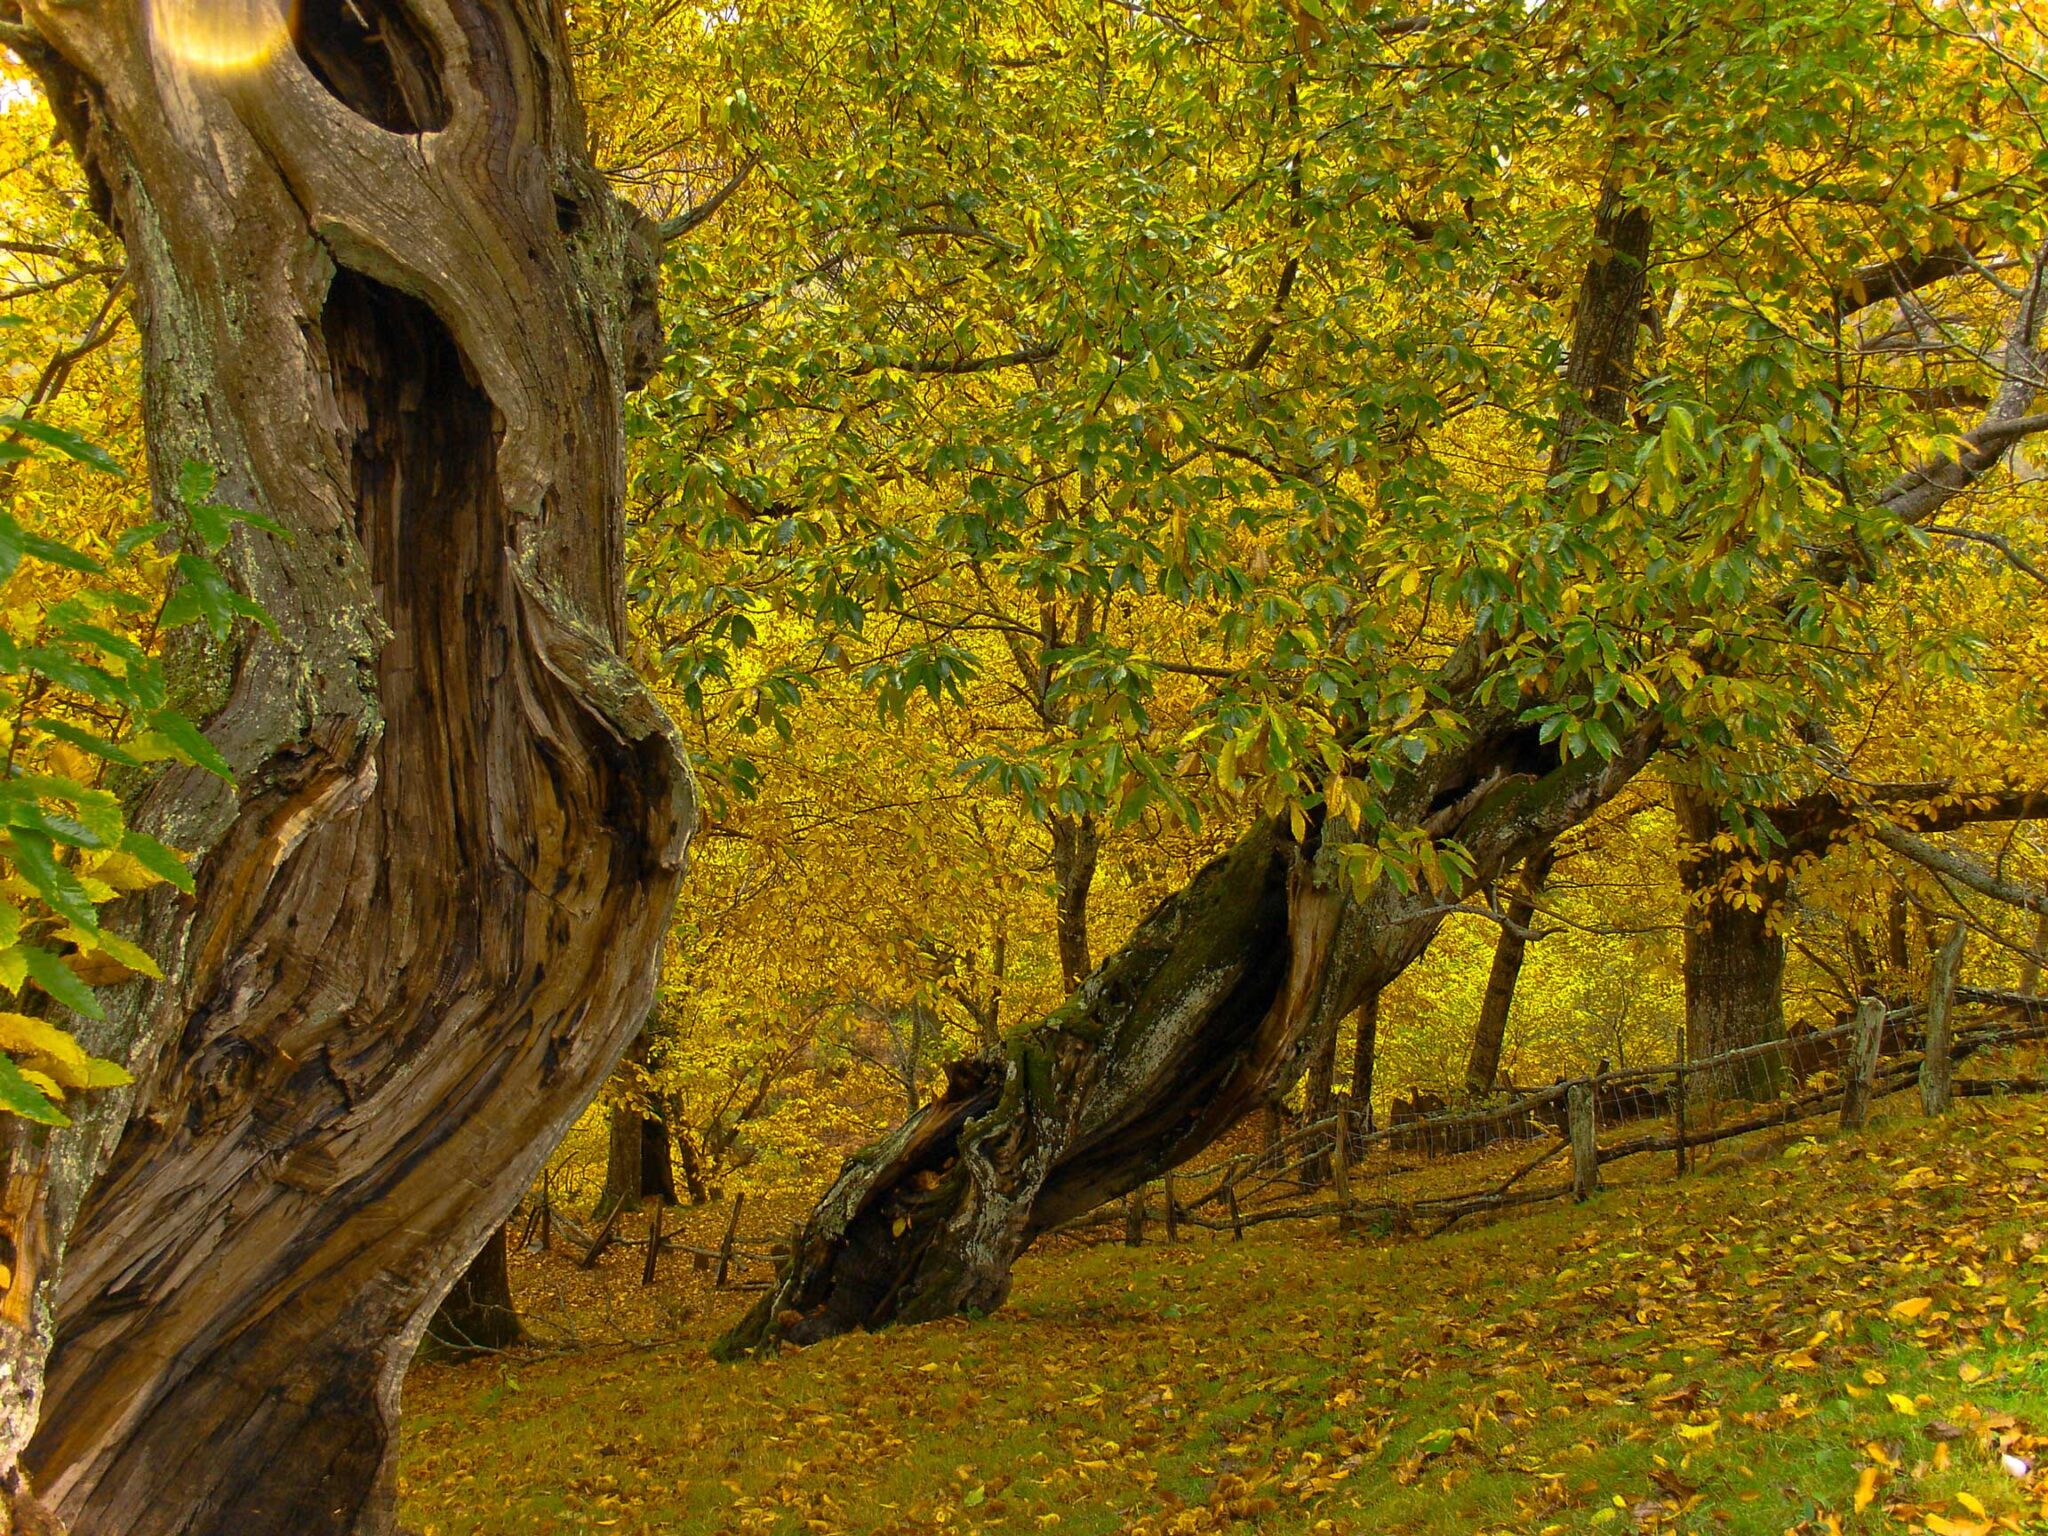 CITES espera ver los compromisos mundiales adoptados en 2010 para conservar los árboles